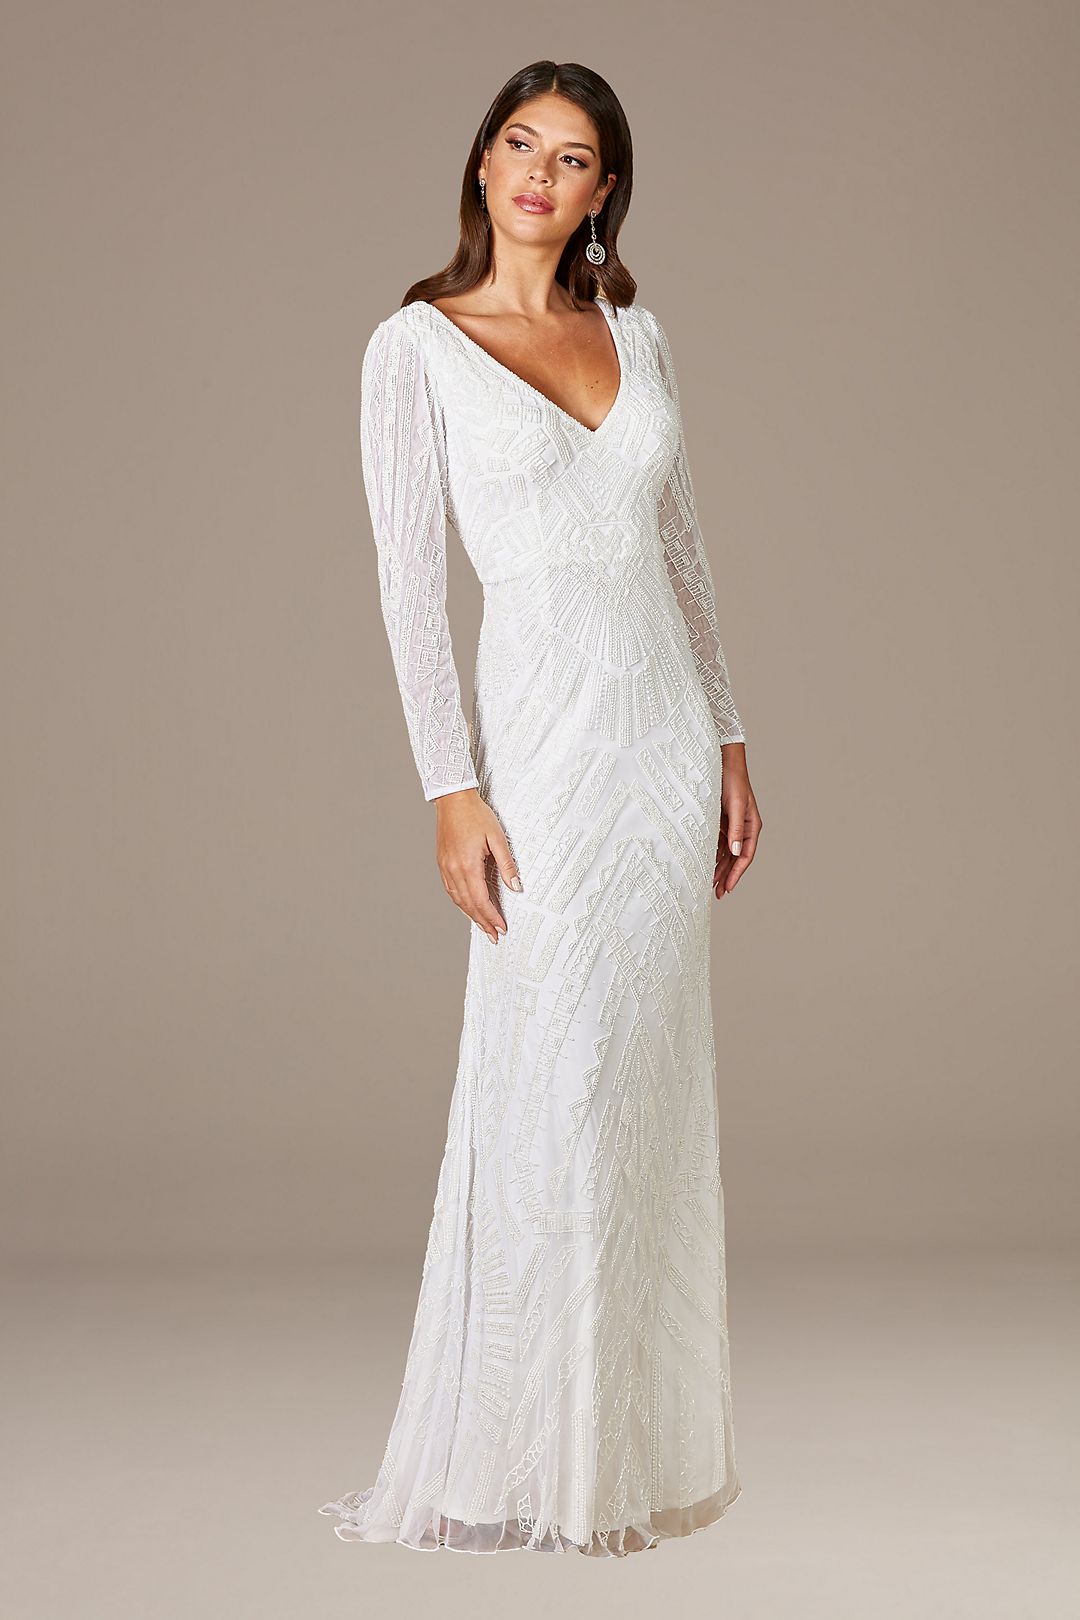 Lara Gretchen V-Neck Long Sleeve Wedding Dress Image 2